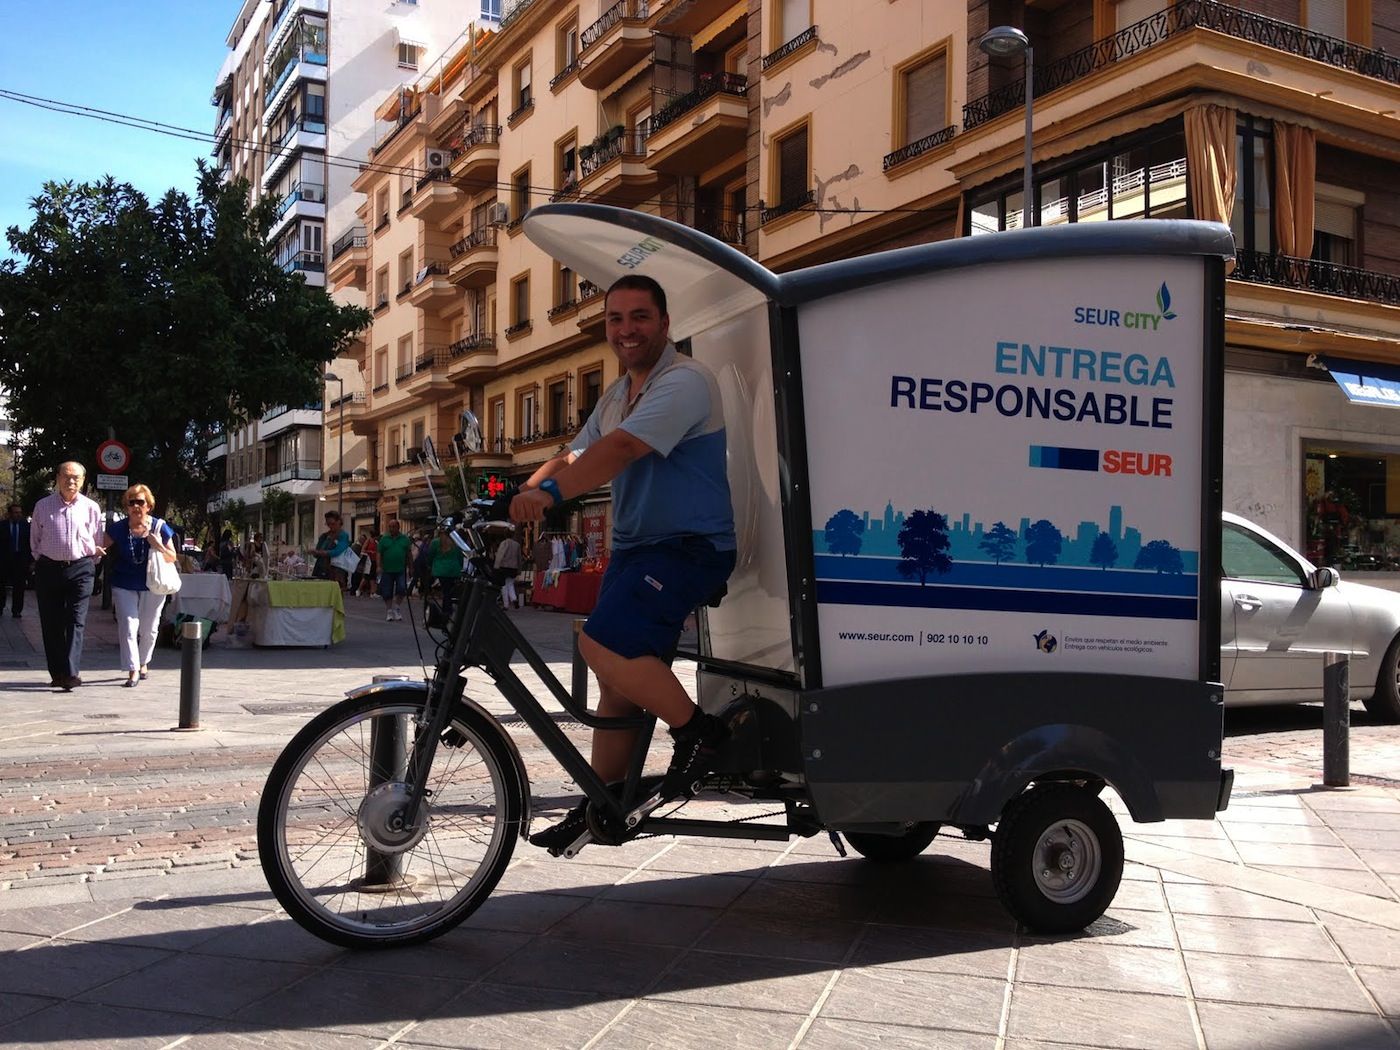 Seur realiza las entregas en Sevilla en biciclo